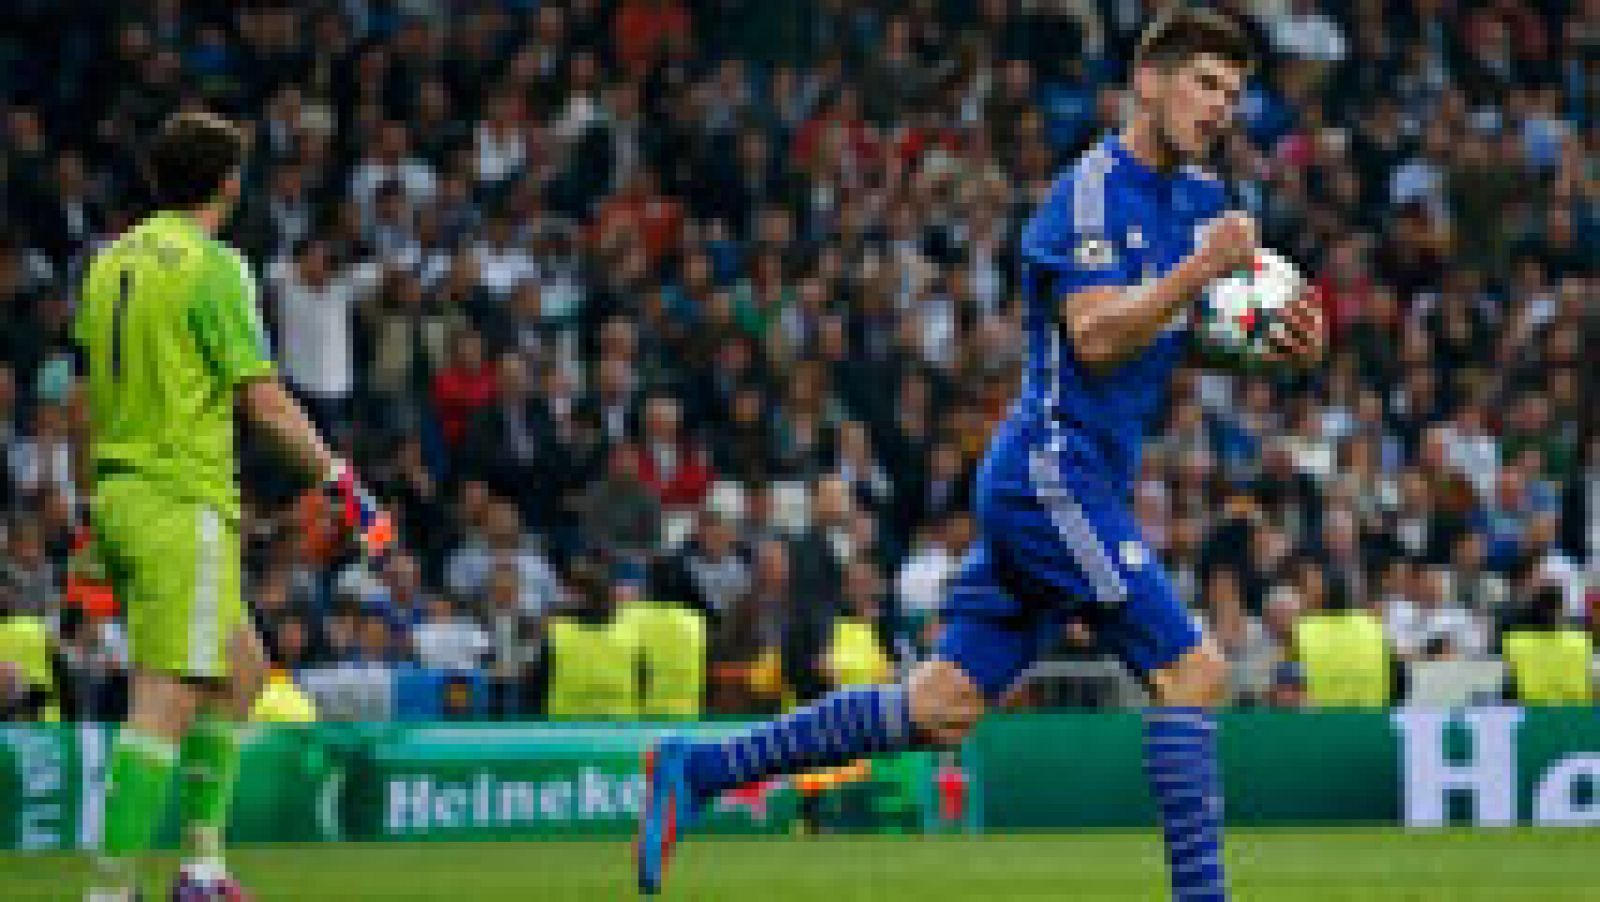 El delantero del Schalke puso por delante de nuevo a su equipo tras aprovecharse de otro desconcierto de la defensa blanca, otra vez en la marca de Arbeloa, 1-2 minuto 39.